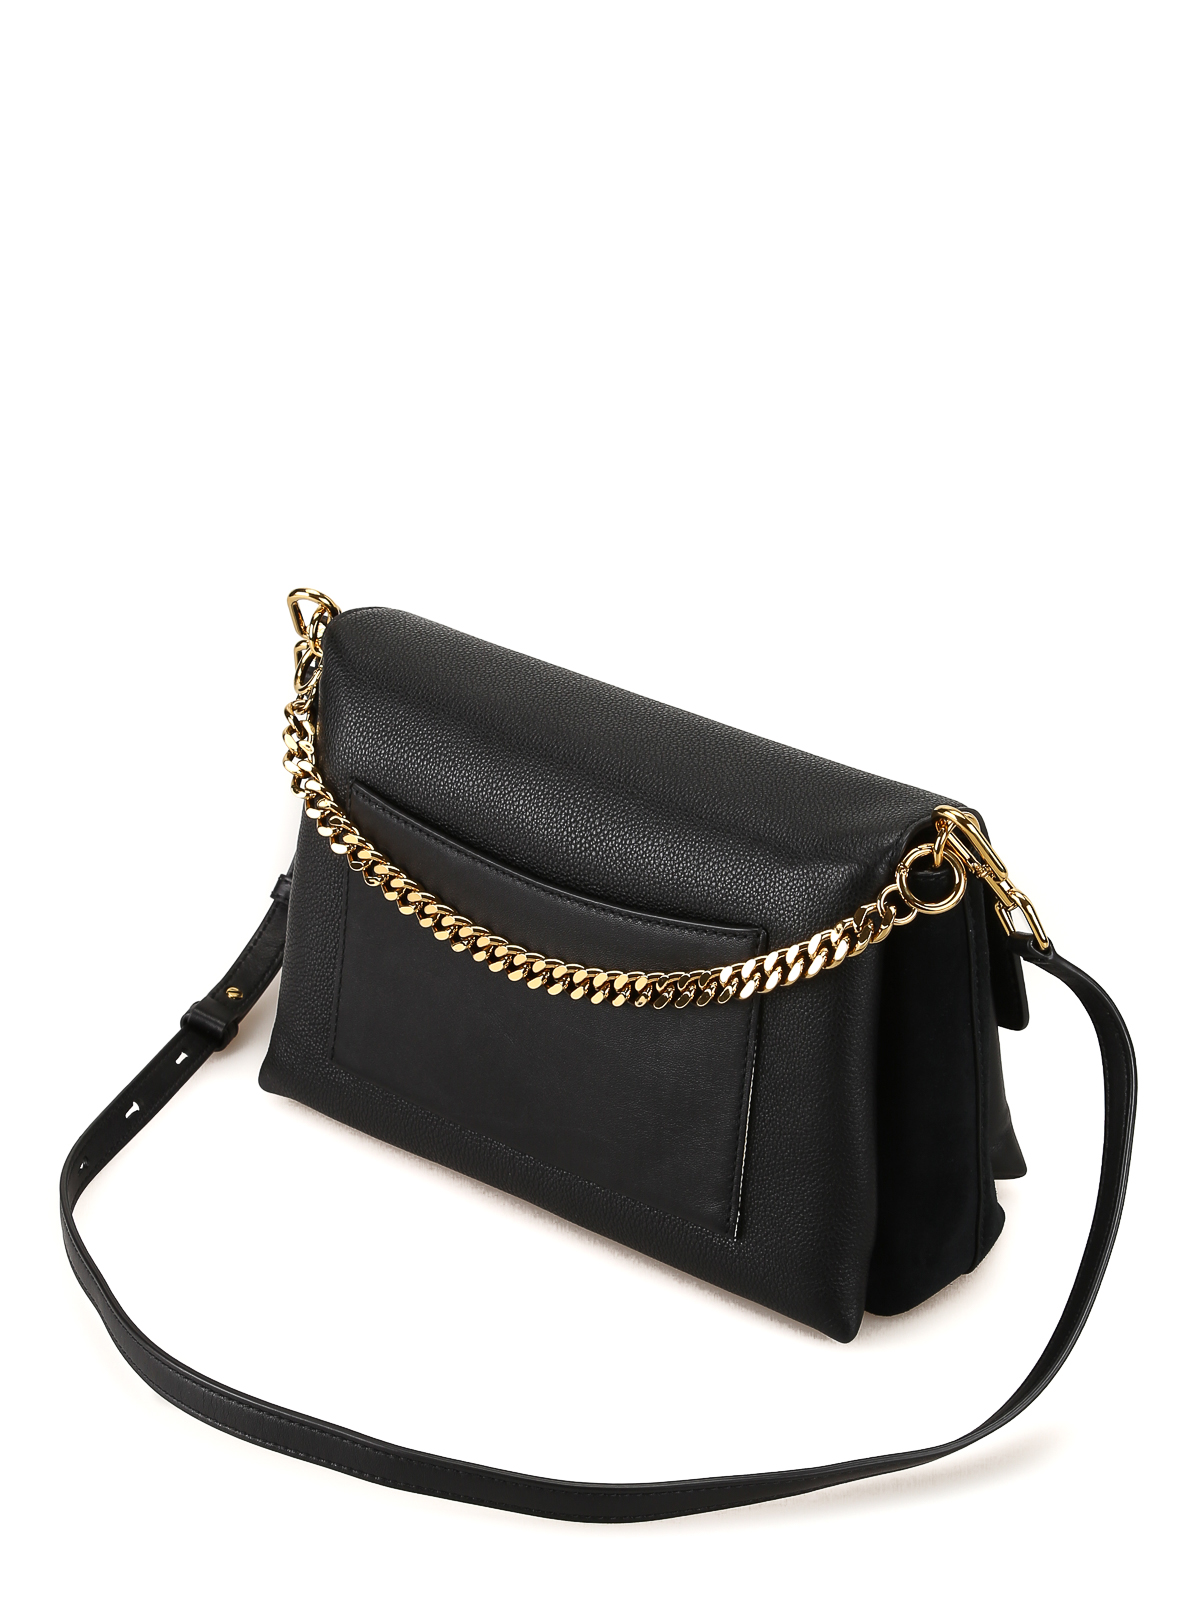 Shoulder bags Tory Burch - Kira black leather shoulder bag - 56382001